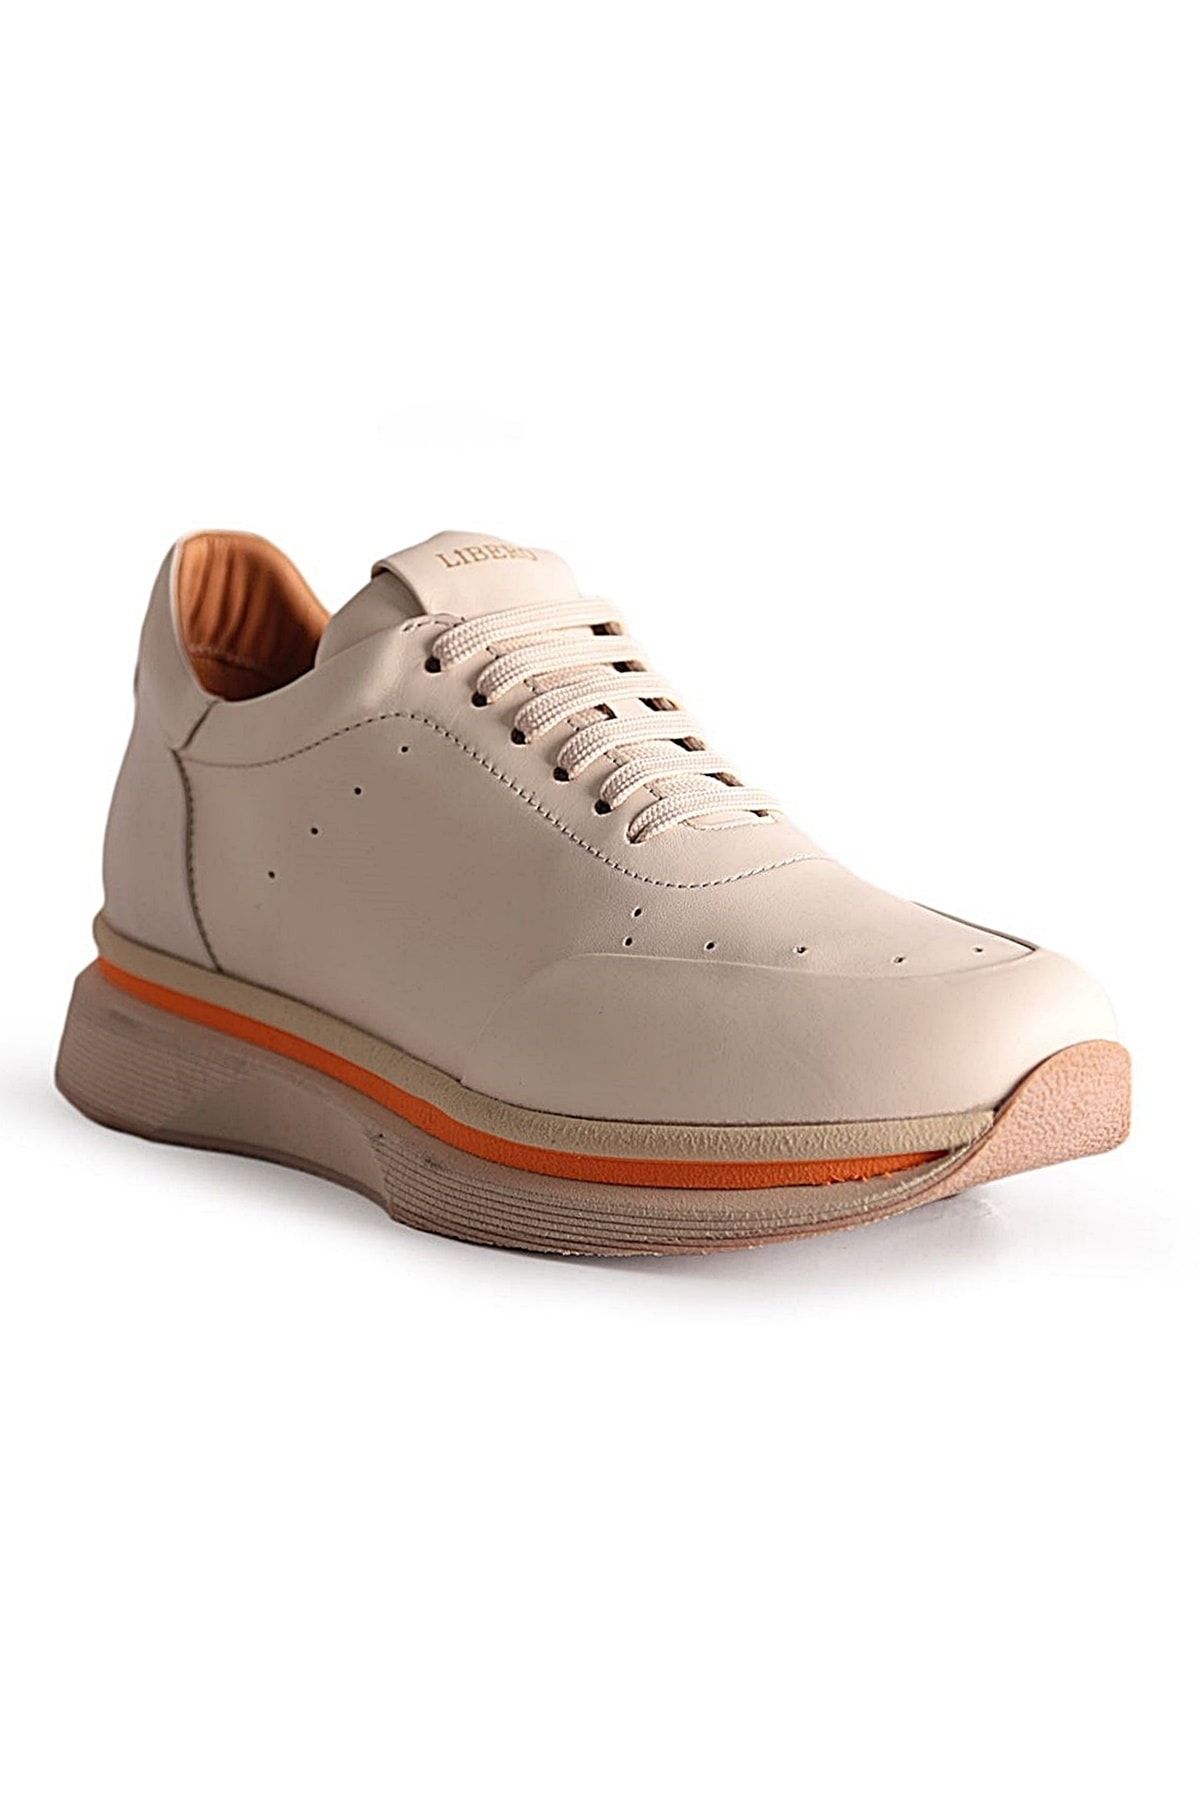 Libero Bej - 4345 Erkek Sneaker Ayakkabı